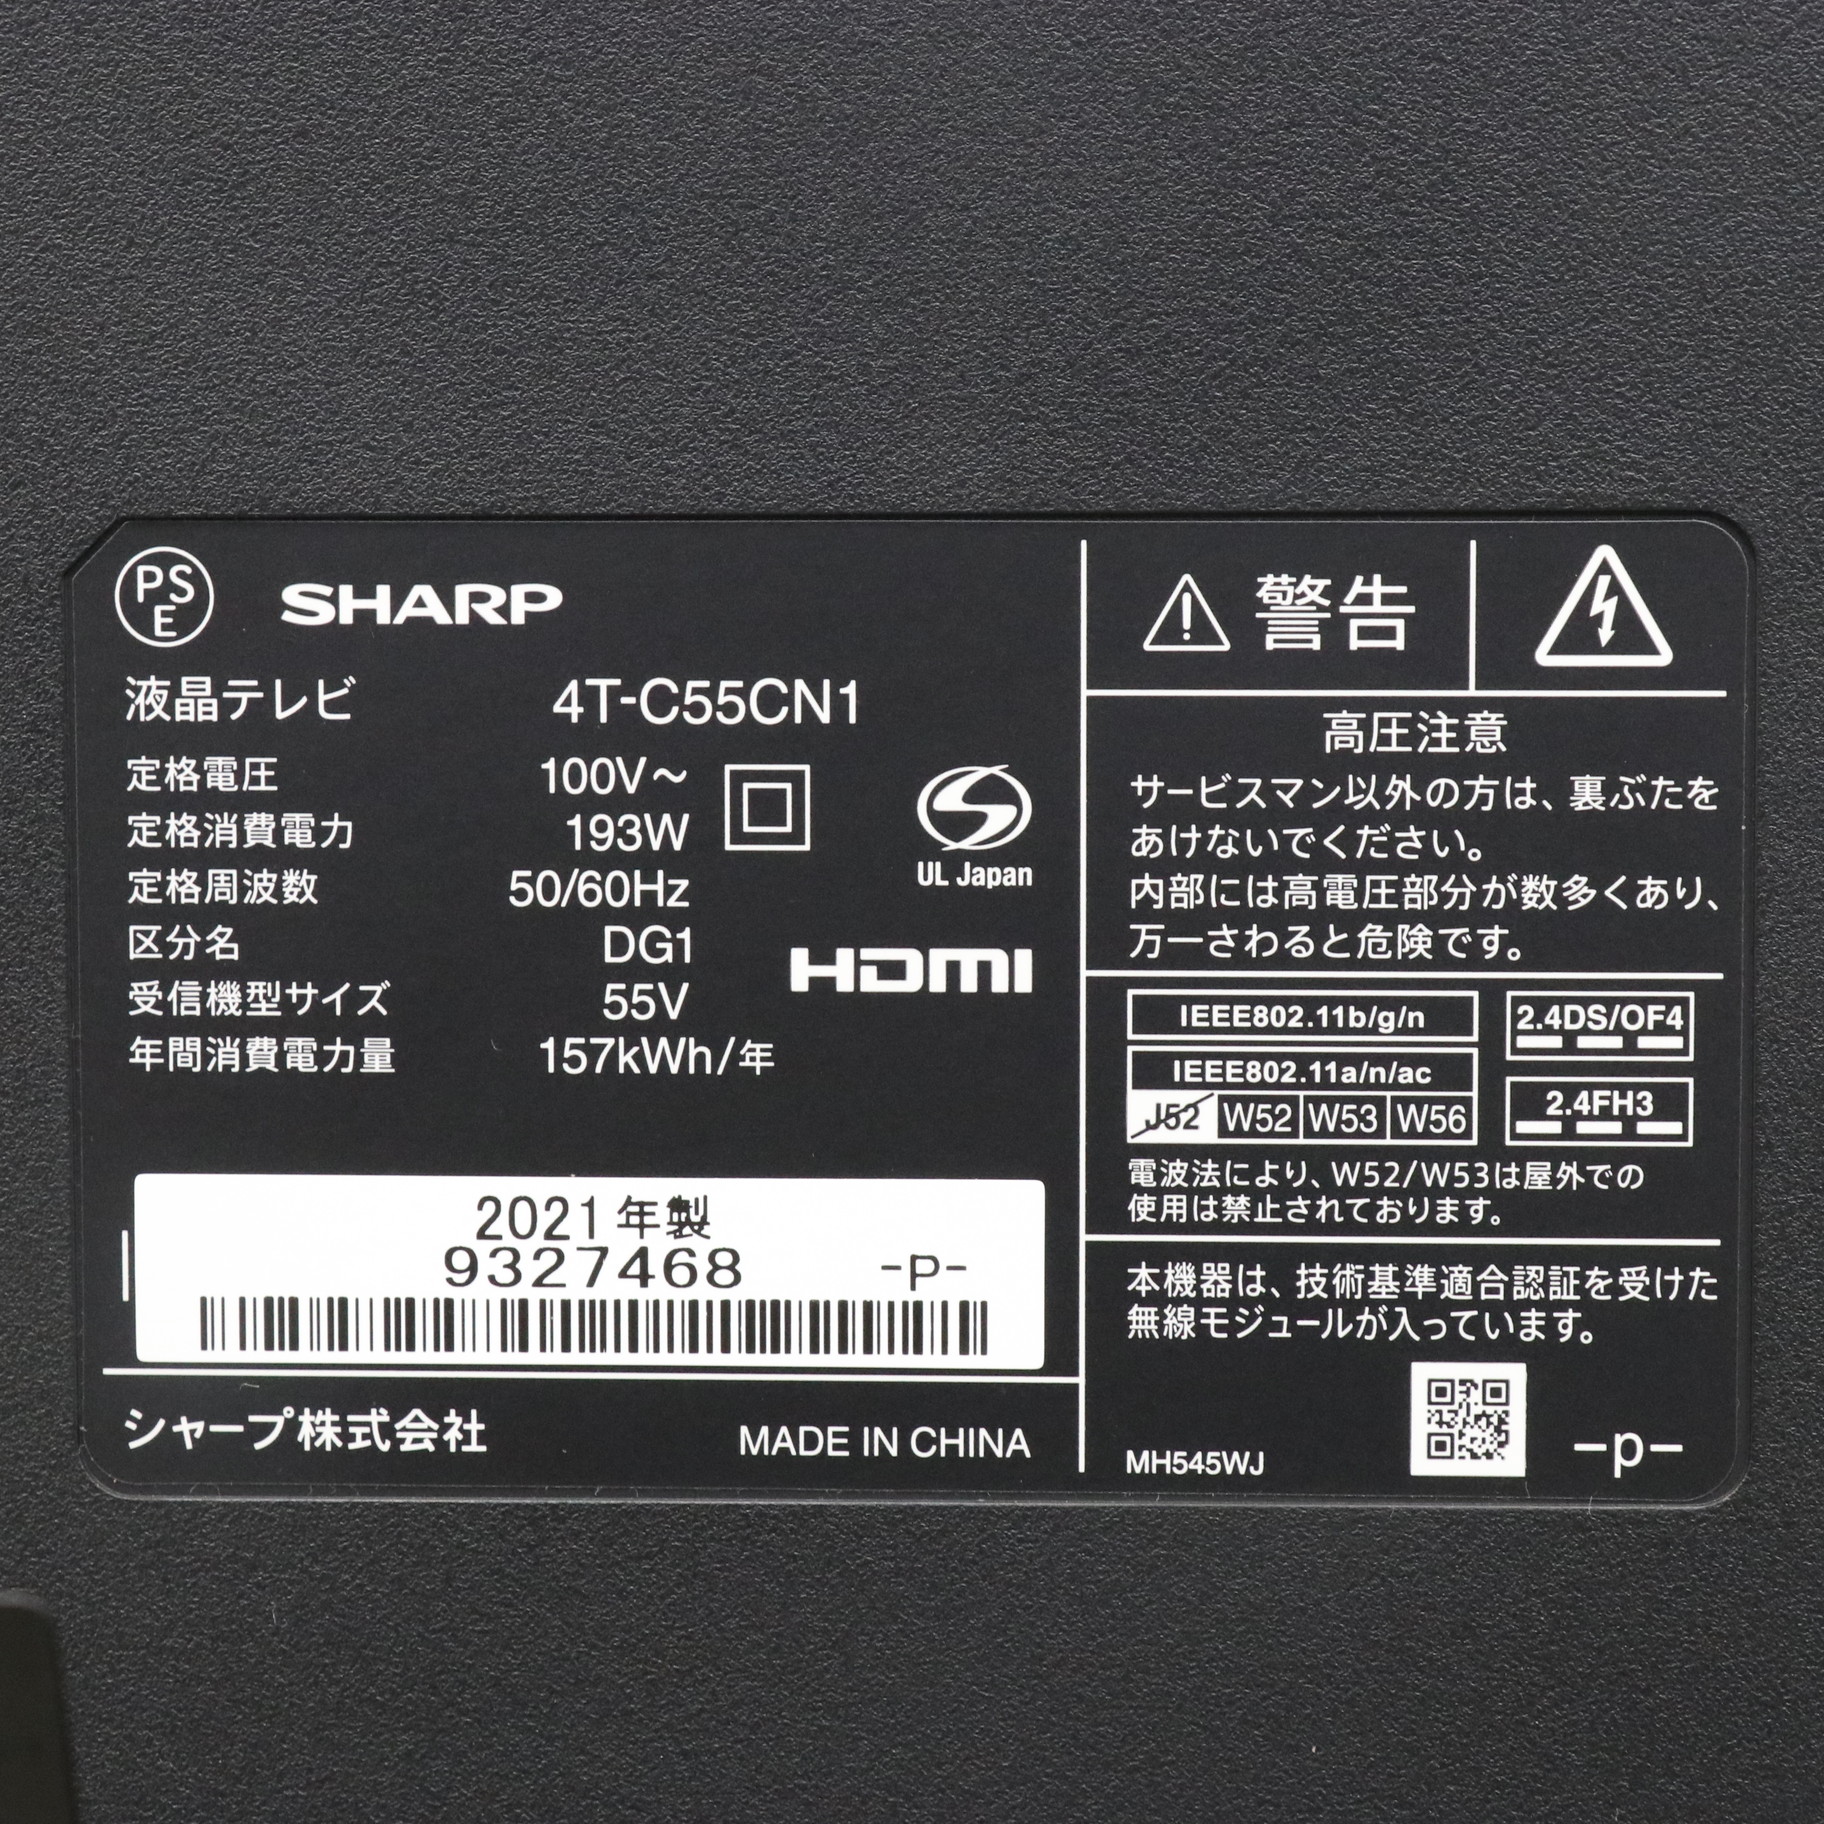 SHARP 4T-C55CN1 BLACK ジャンク品 テレビ 55インチ - PC周辺機器